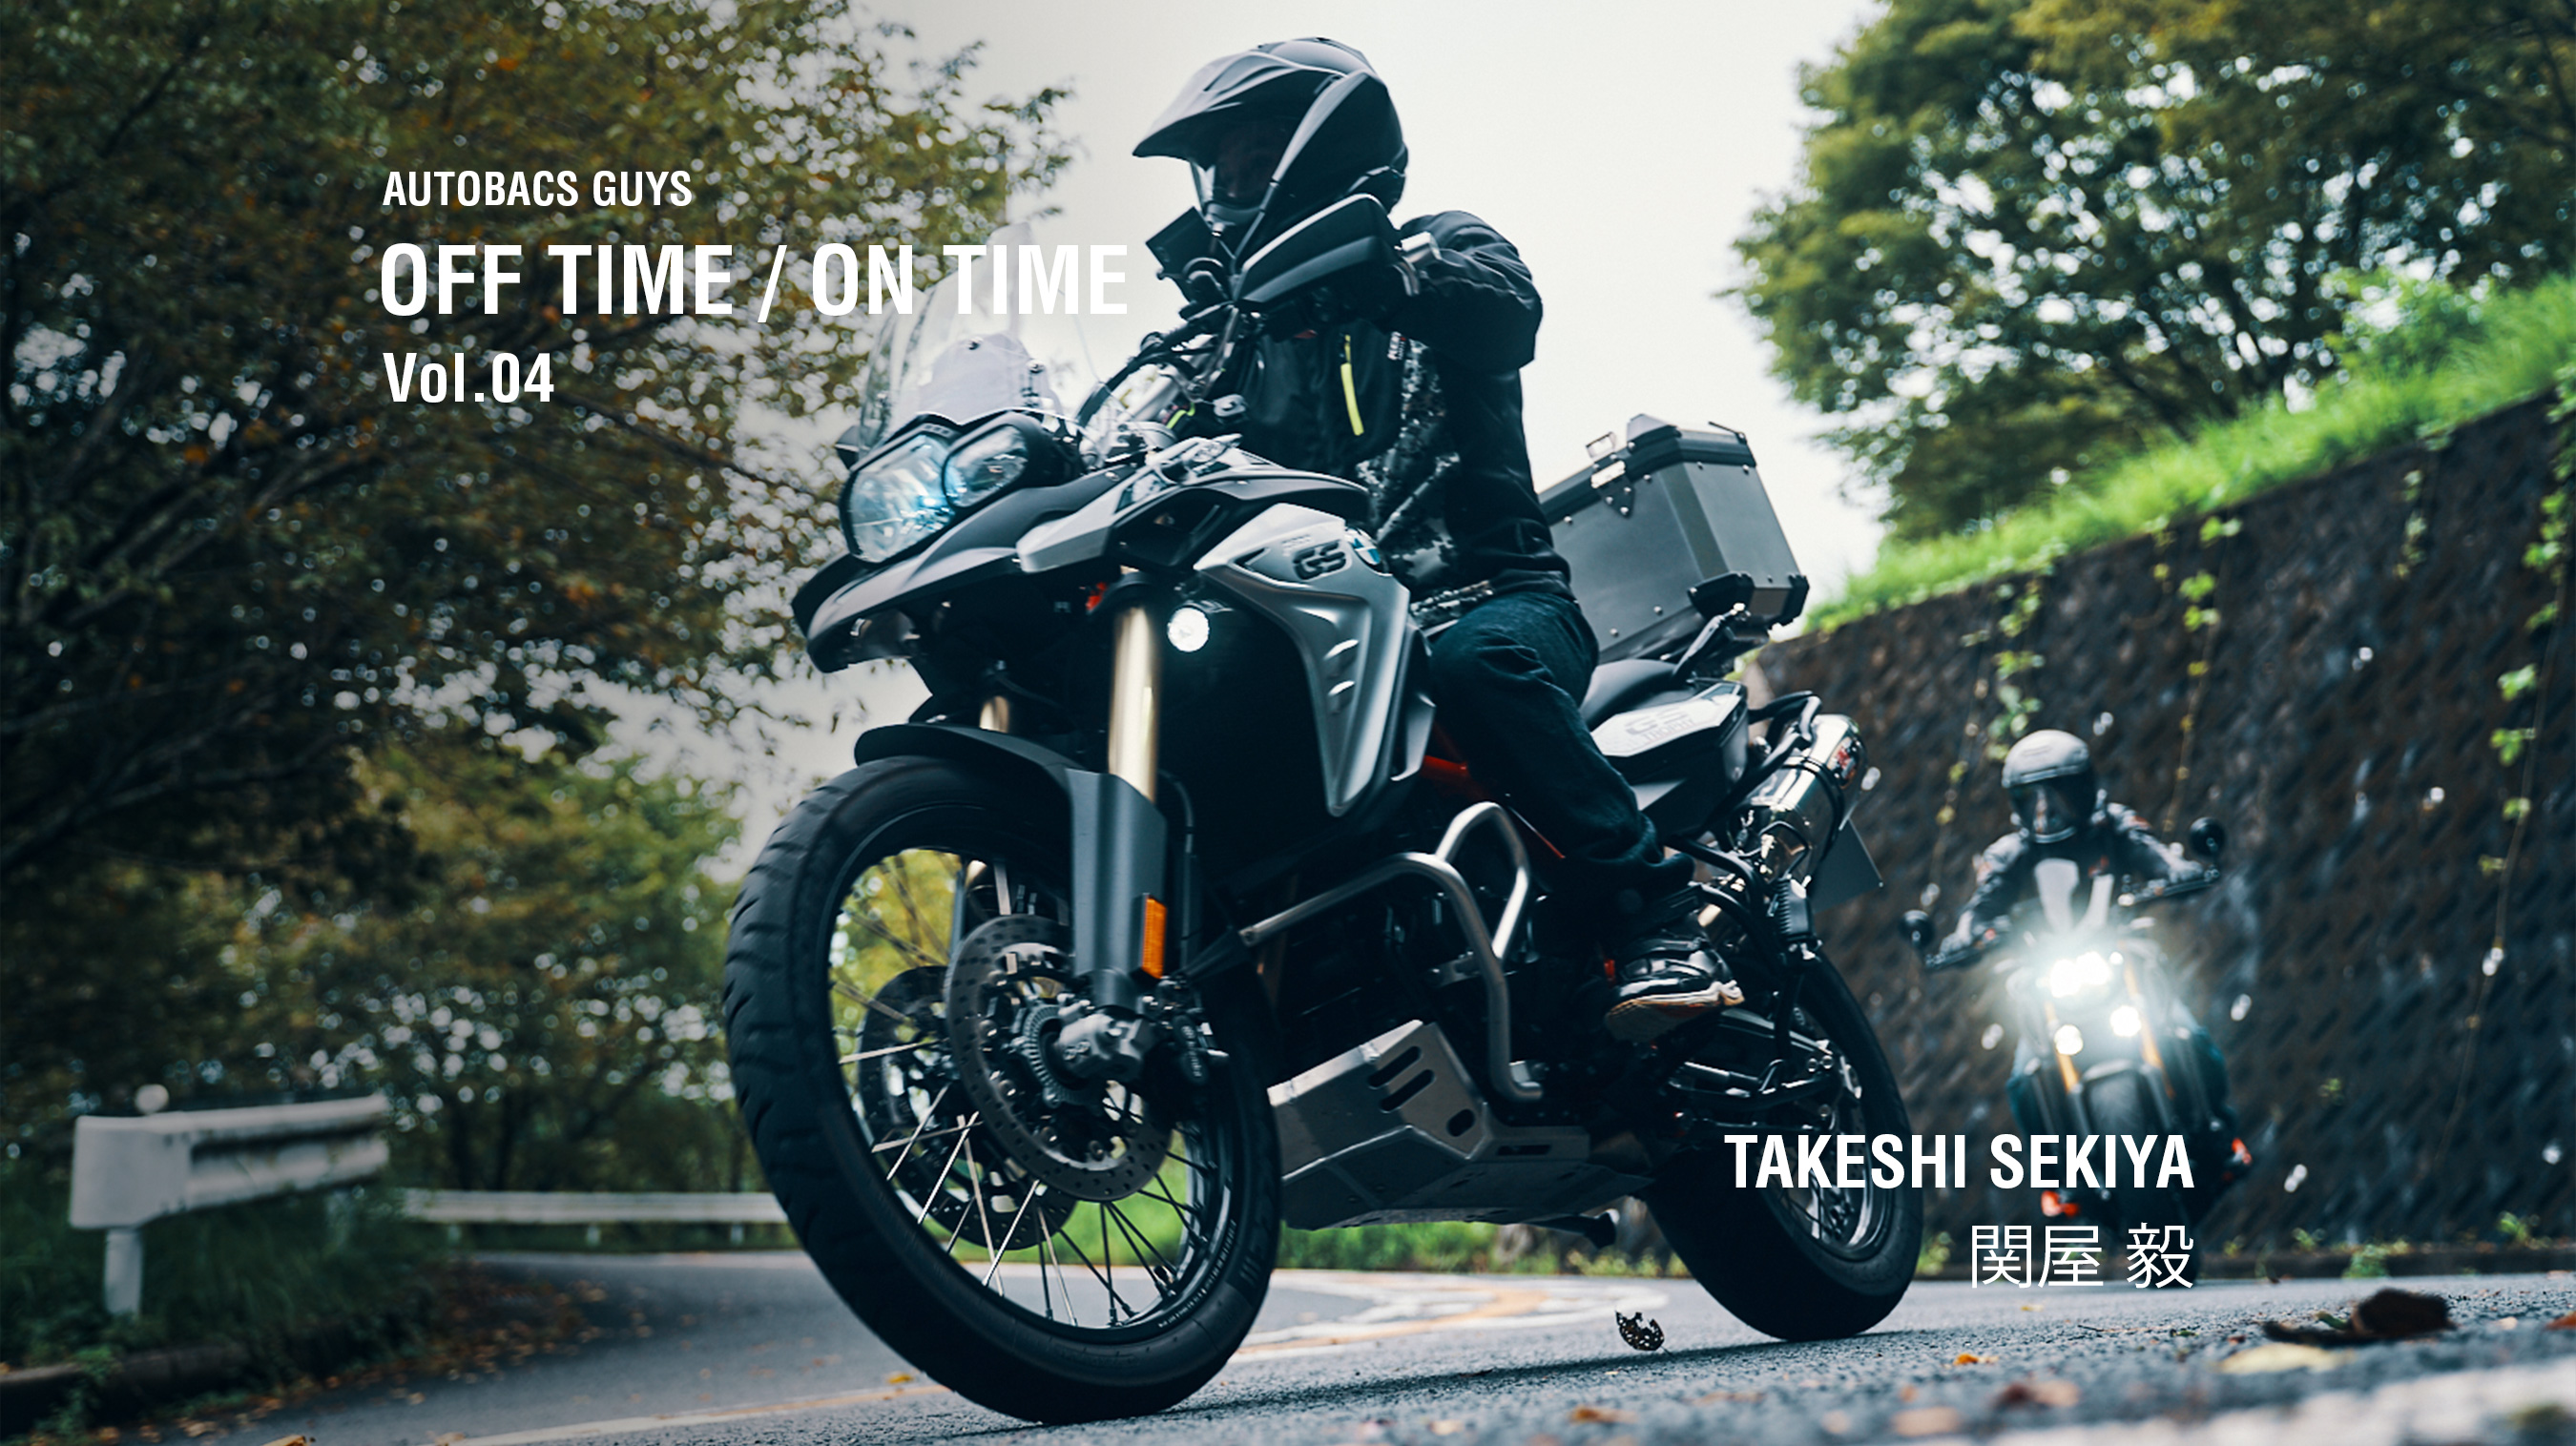 AUTOBACS GUYS OFF TIME / ON TIME オートバックスガイズの裏側　Vol.04 : 関屋 毅 TAKESHI SEKIYA